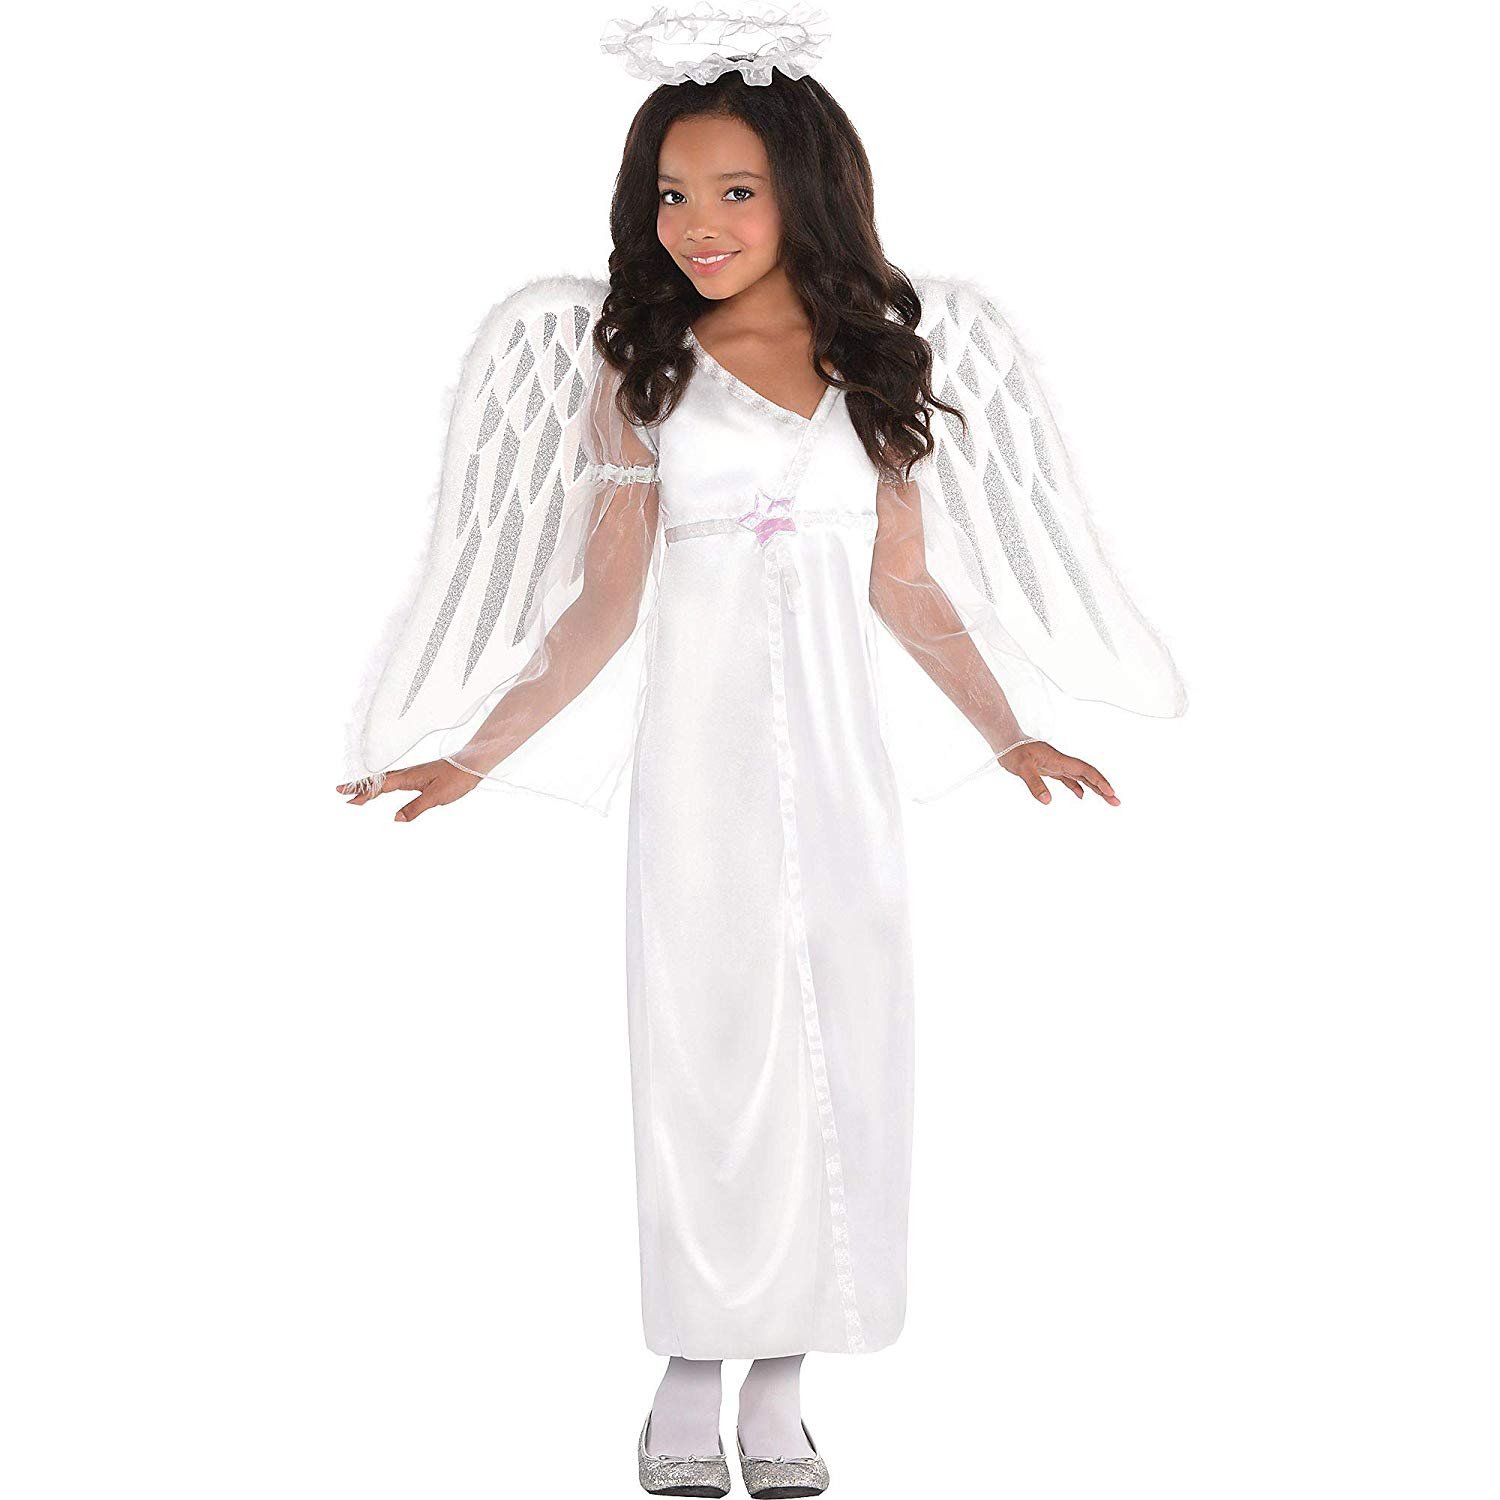 Костюм ангела для девочки своими руками: фото-подборка прилагается